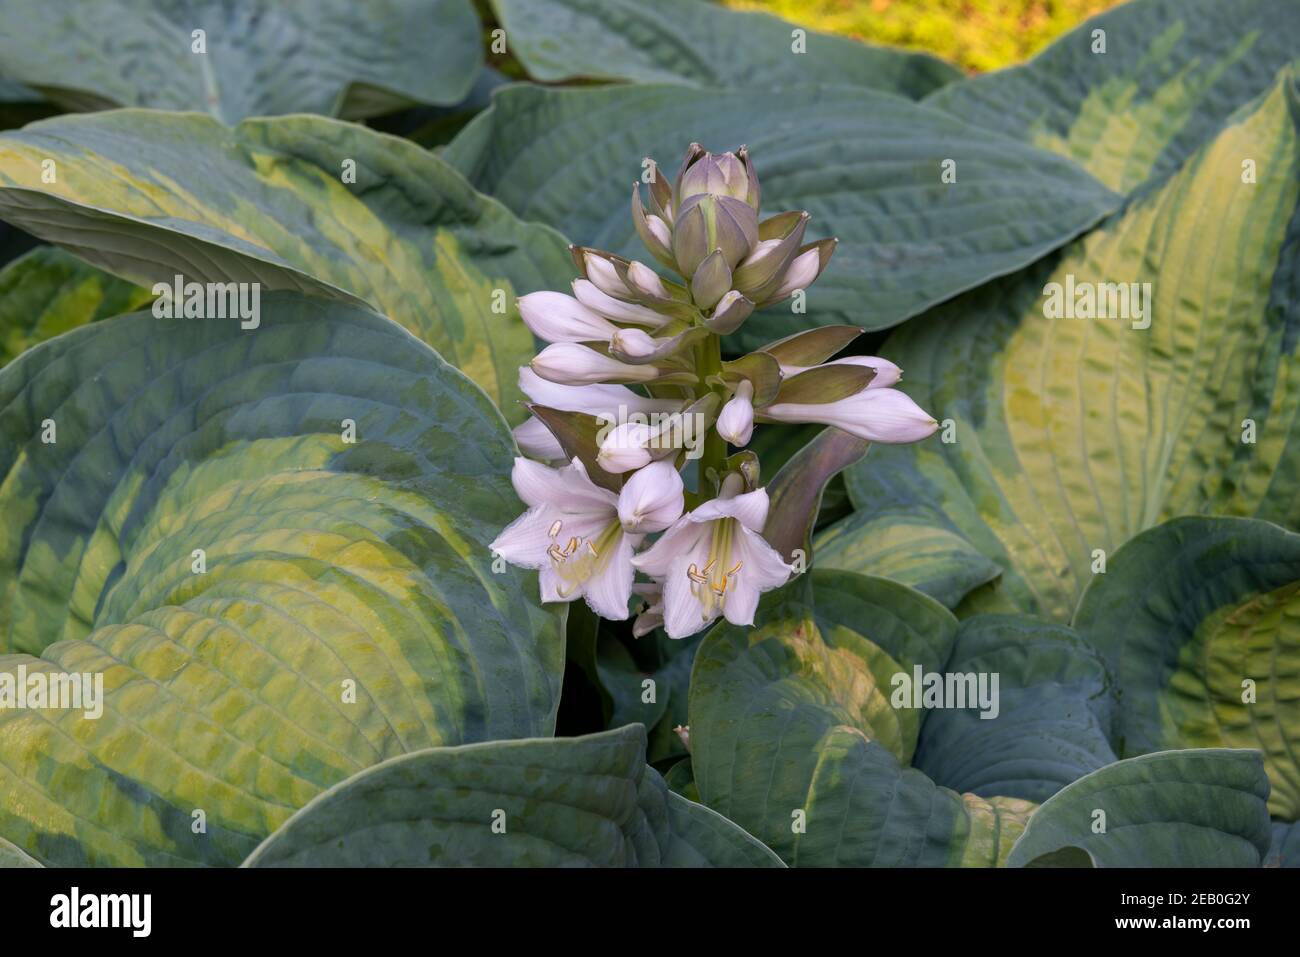 Einzelne aufrecht blühende Stiele von Hosta‘Inniswood’ blassen lavendelrosa Blüten amongs dicken grünen und gelb gefärbten Blättern. Stockfoto